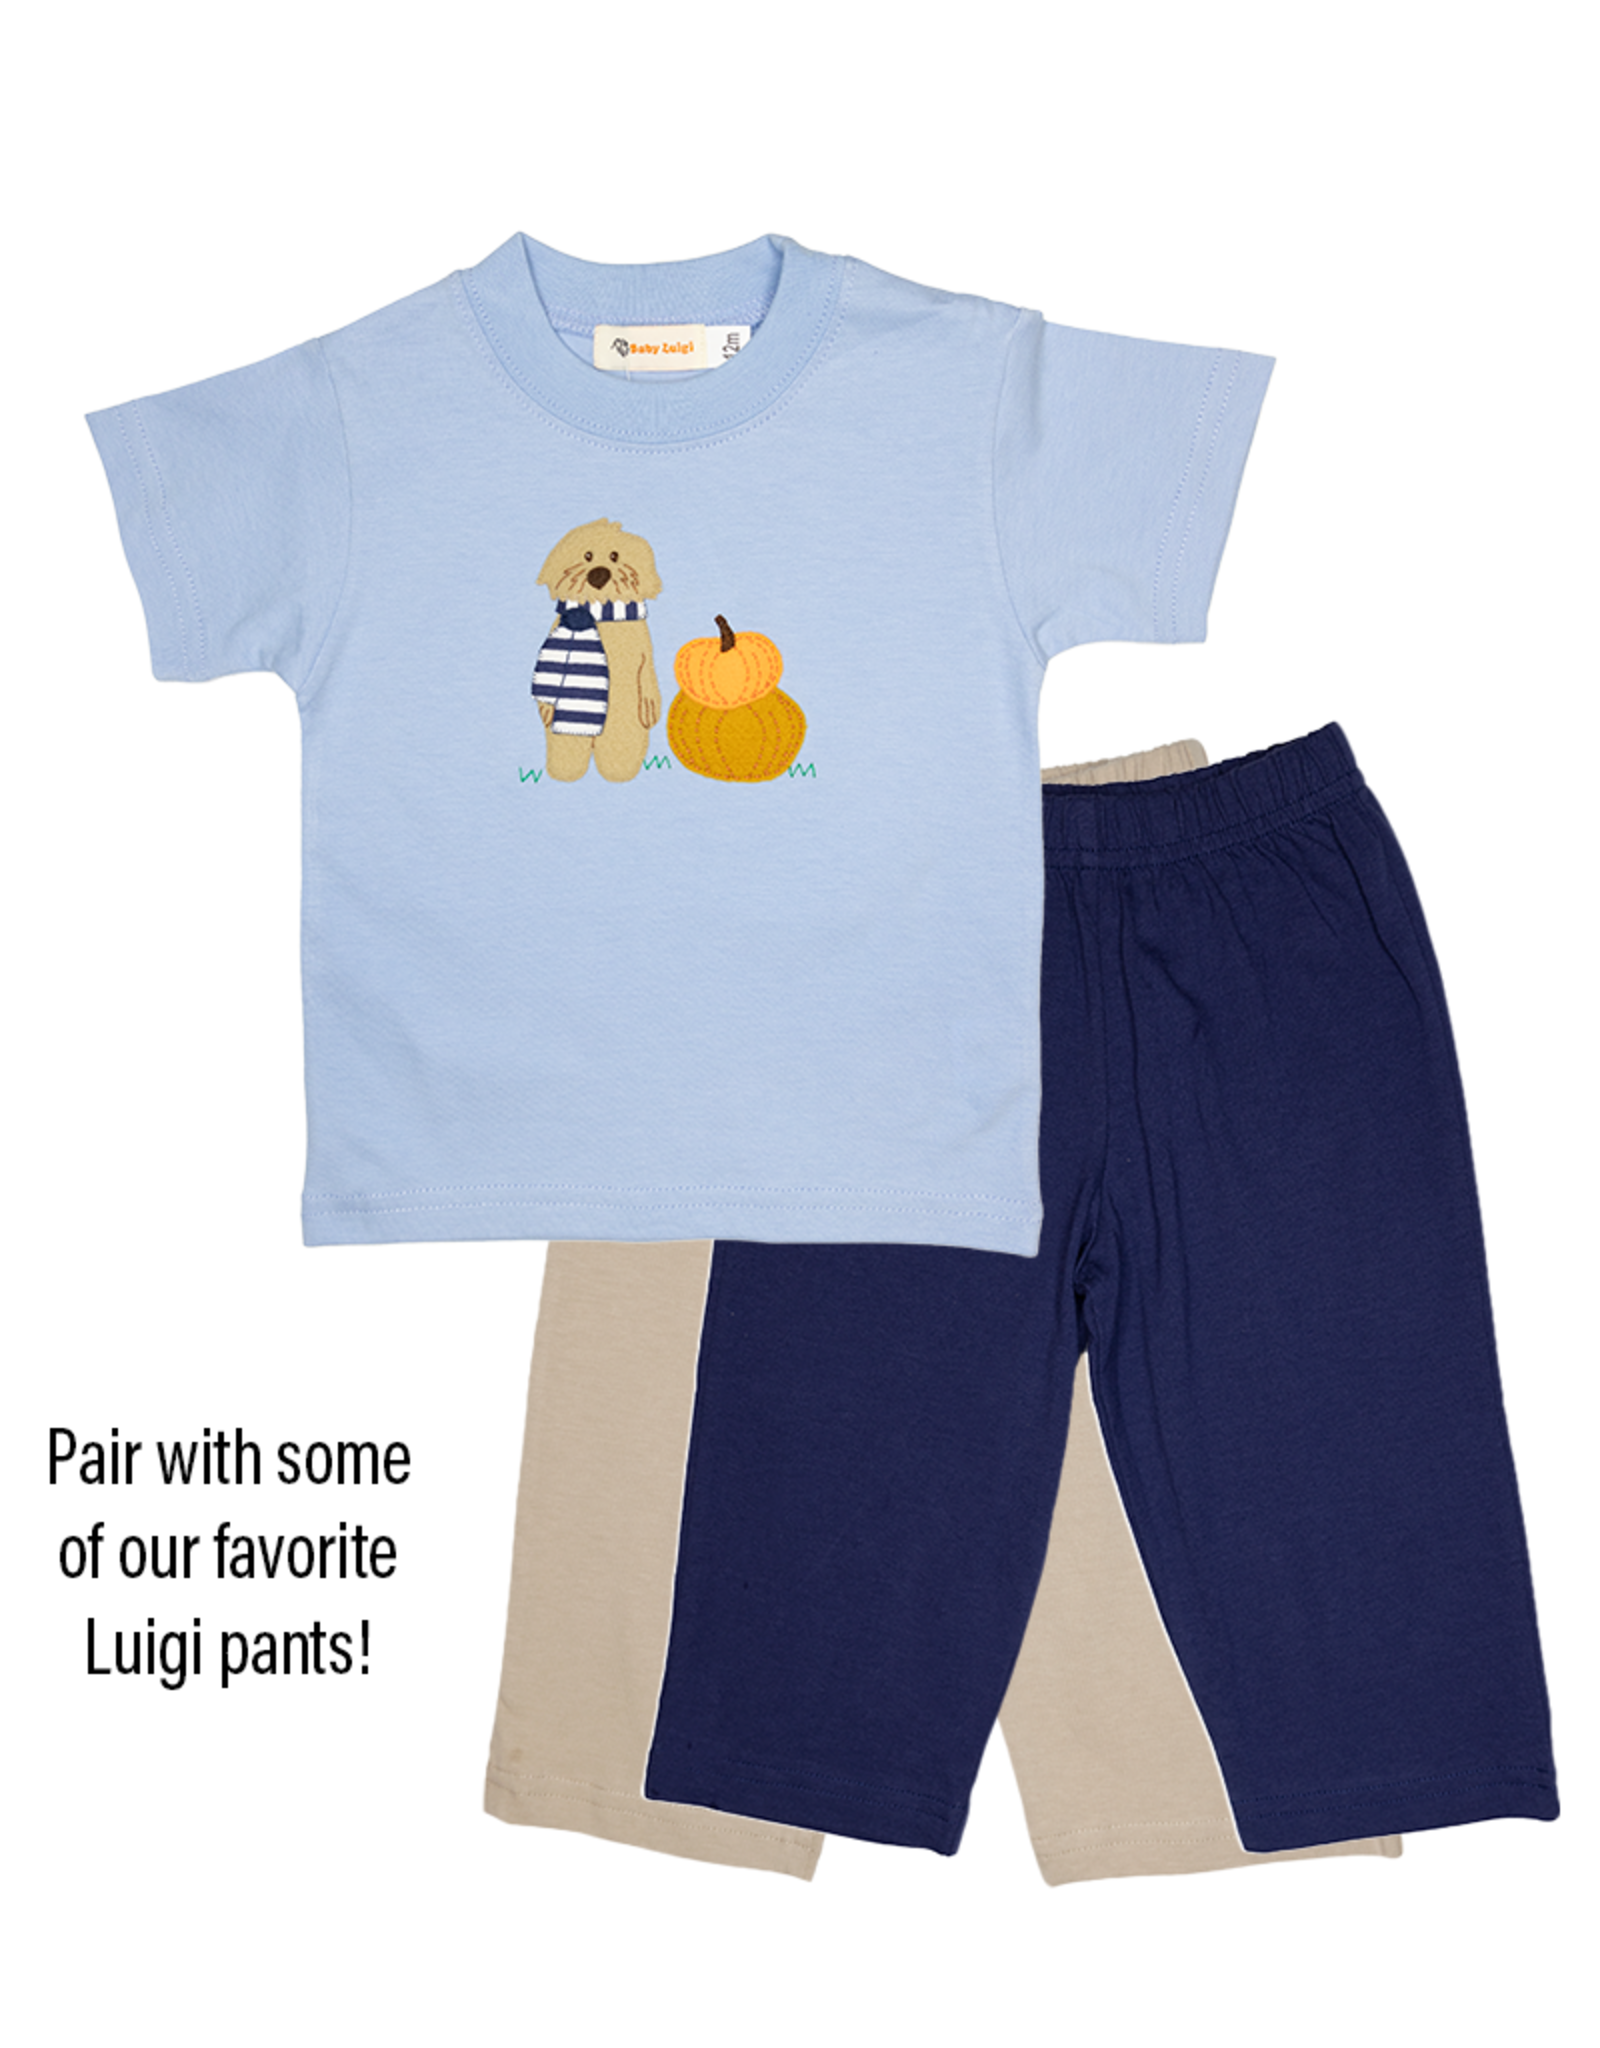 Luigi F23 Boy Shirt Sky Blue Dog w/Scarf Pumpkins